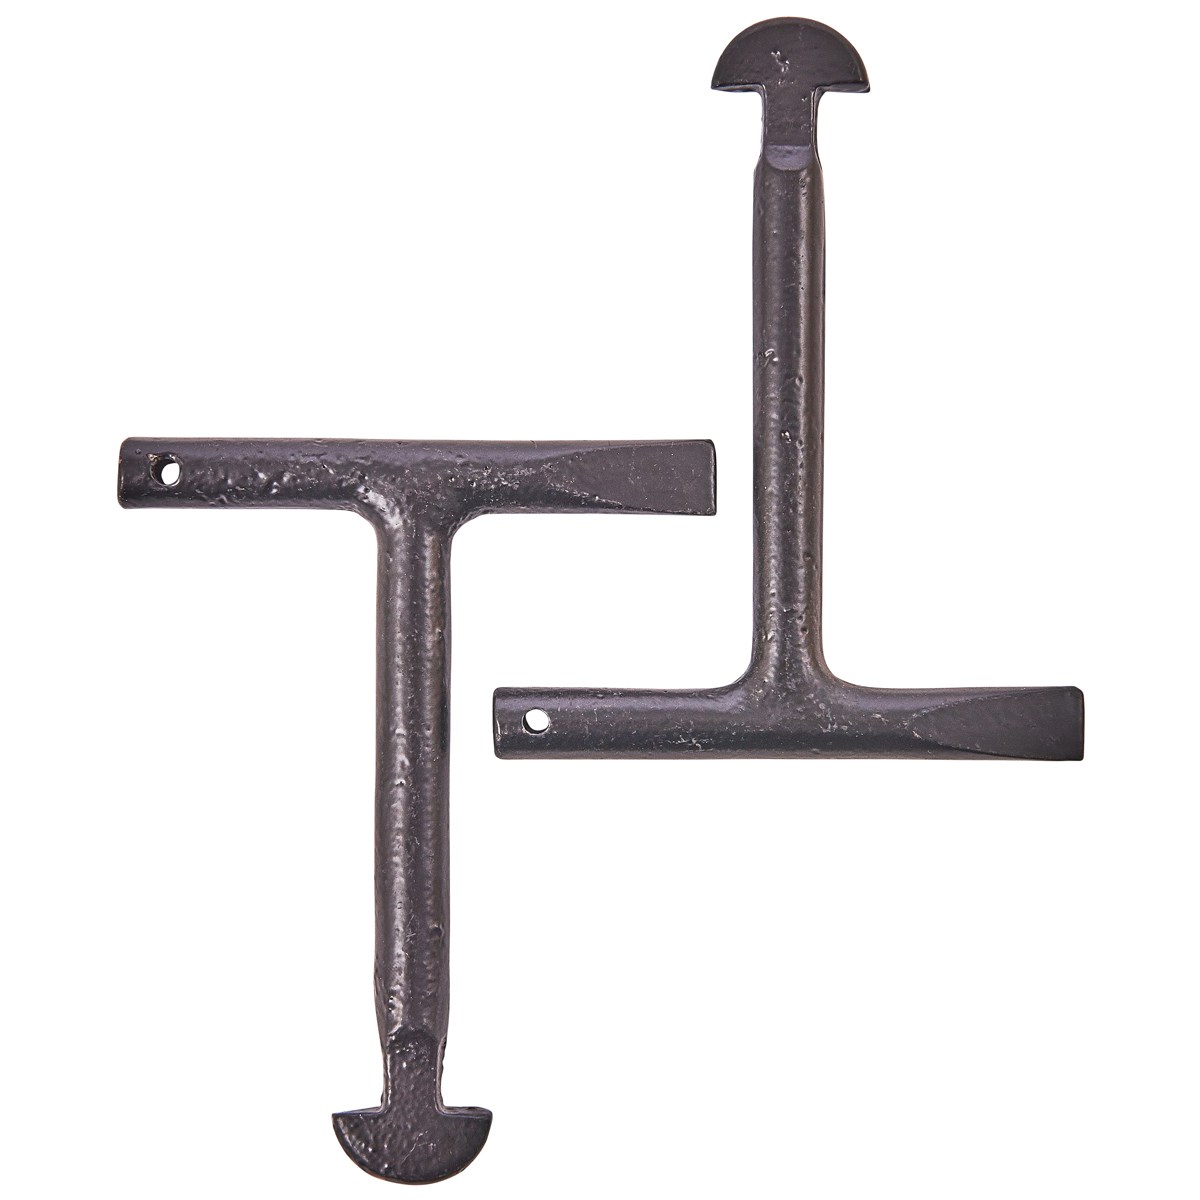 2Pc Standard Man Hole Key Set Heavy Duty Steel T-Handle 